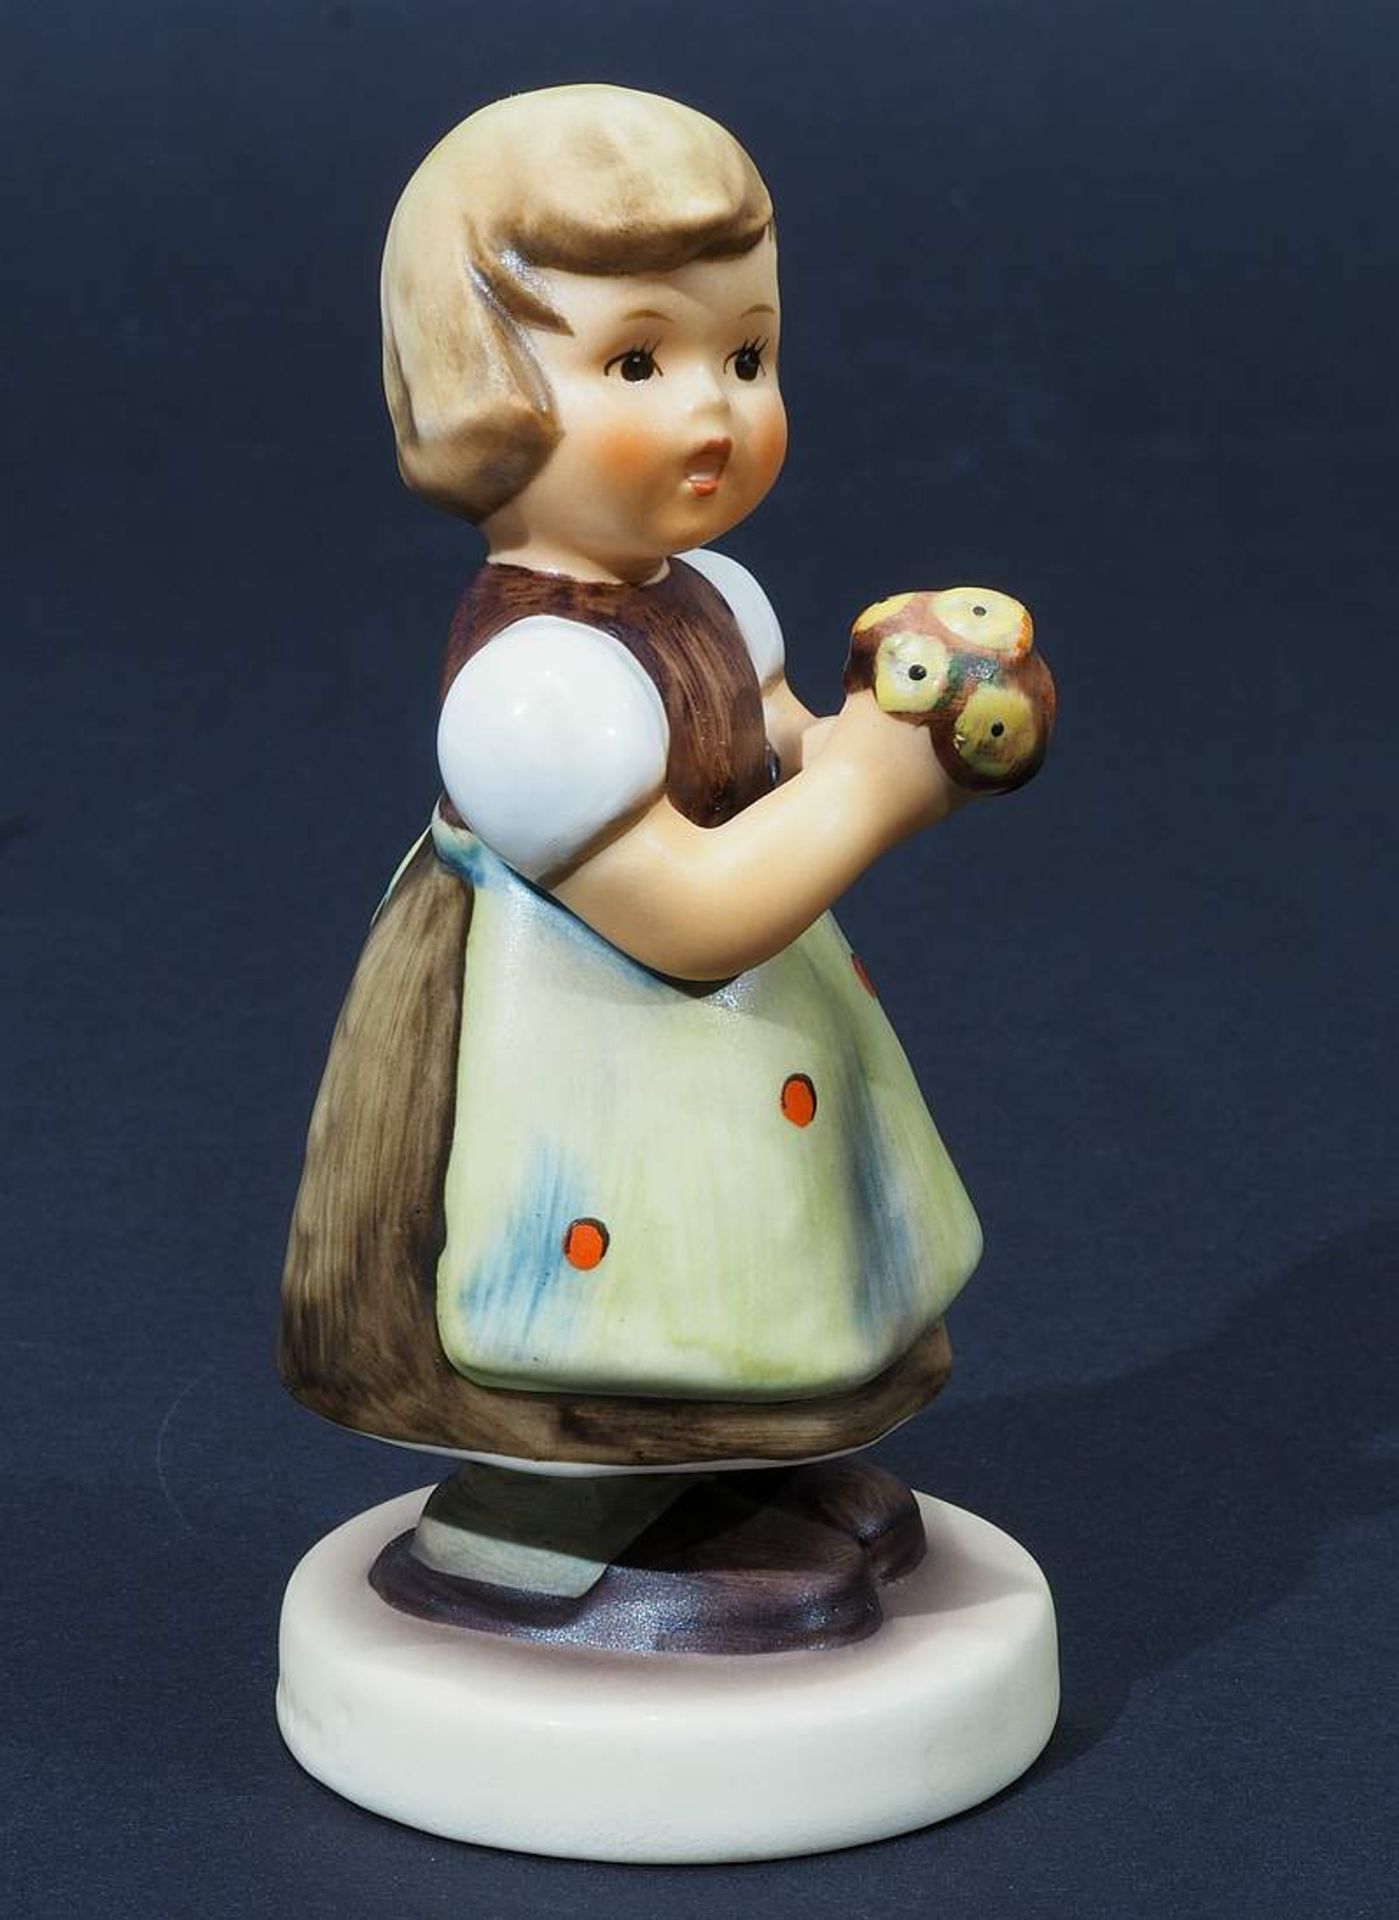 Goebel Figur "Fürs Mütterchen", 1984. Modell Nummer 257. Farbig bemalt, Höhe 10,5 cm. - Bild 3 aus 7